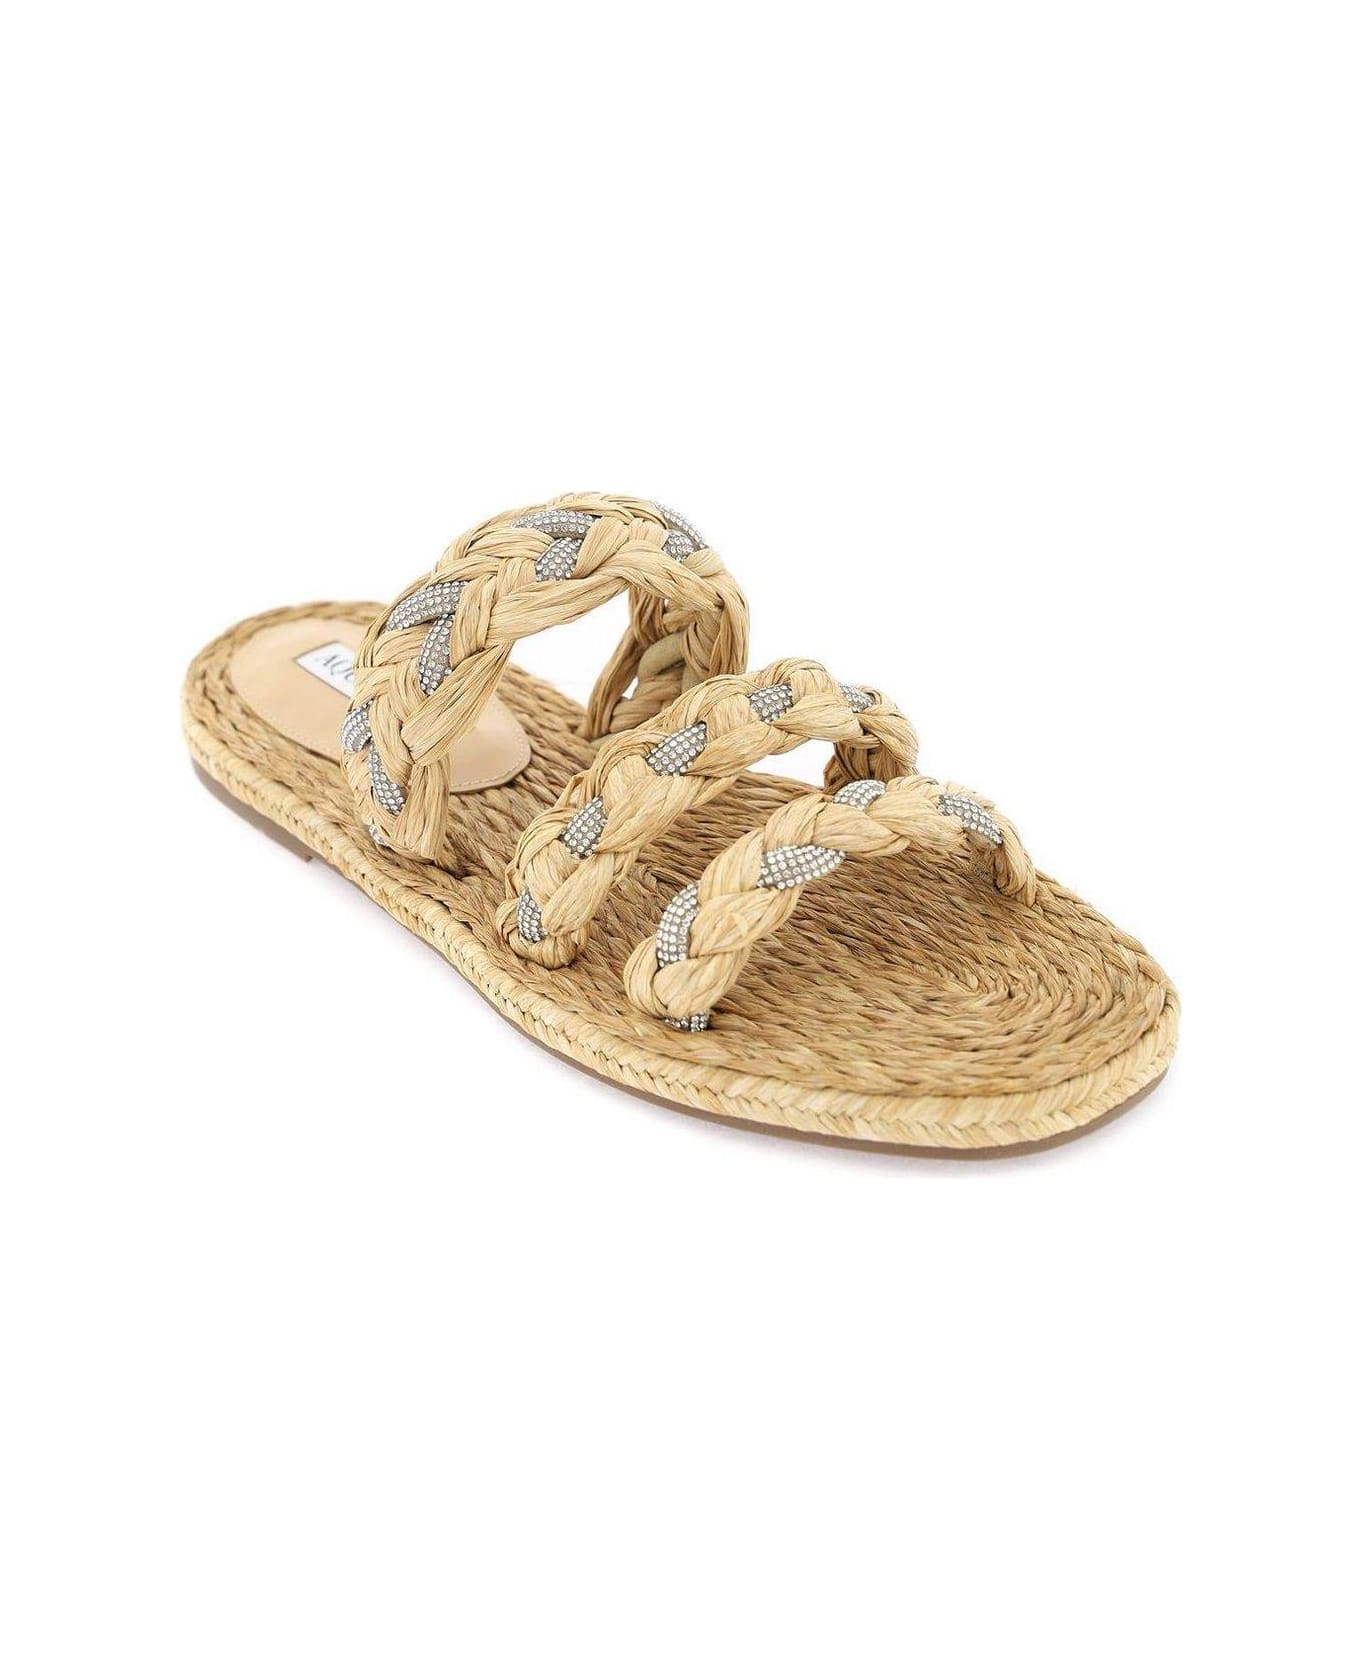 Aquazzura Embellished Slip-on Sandals - Neutro